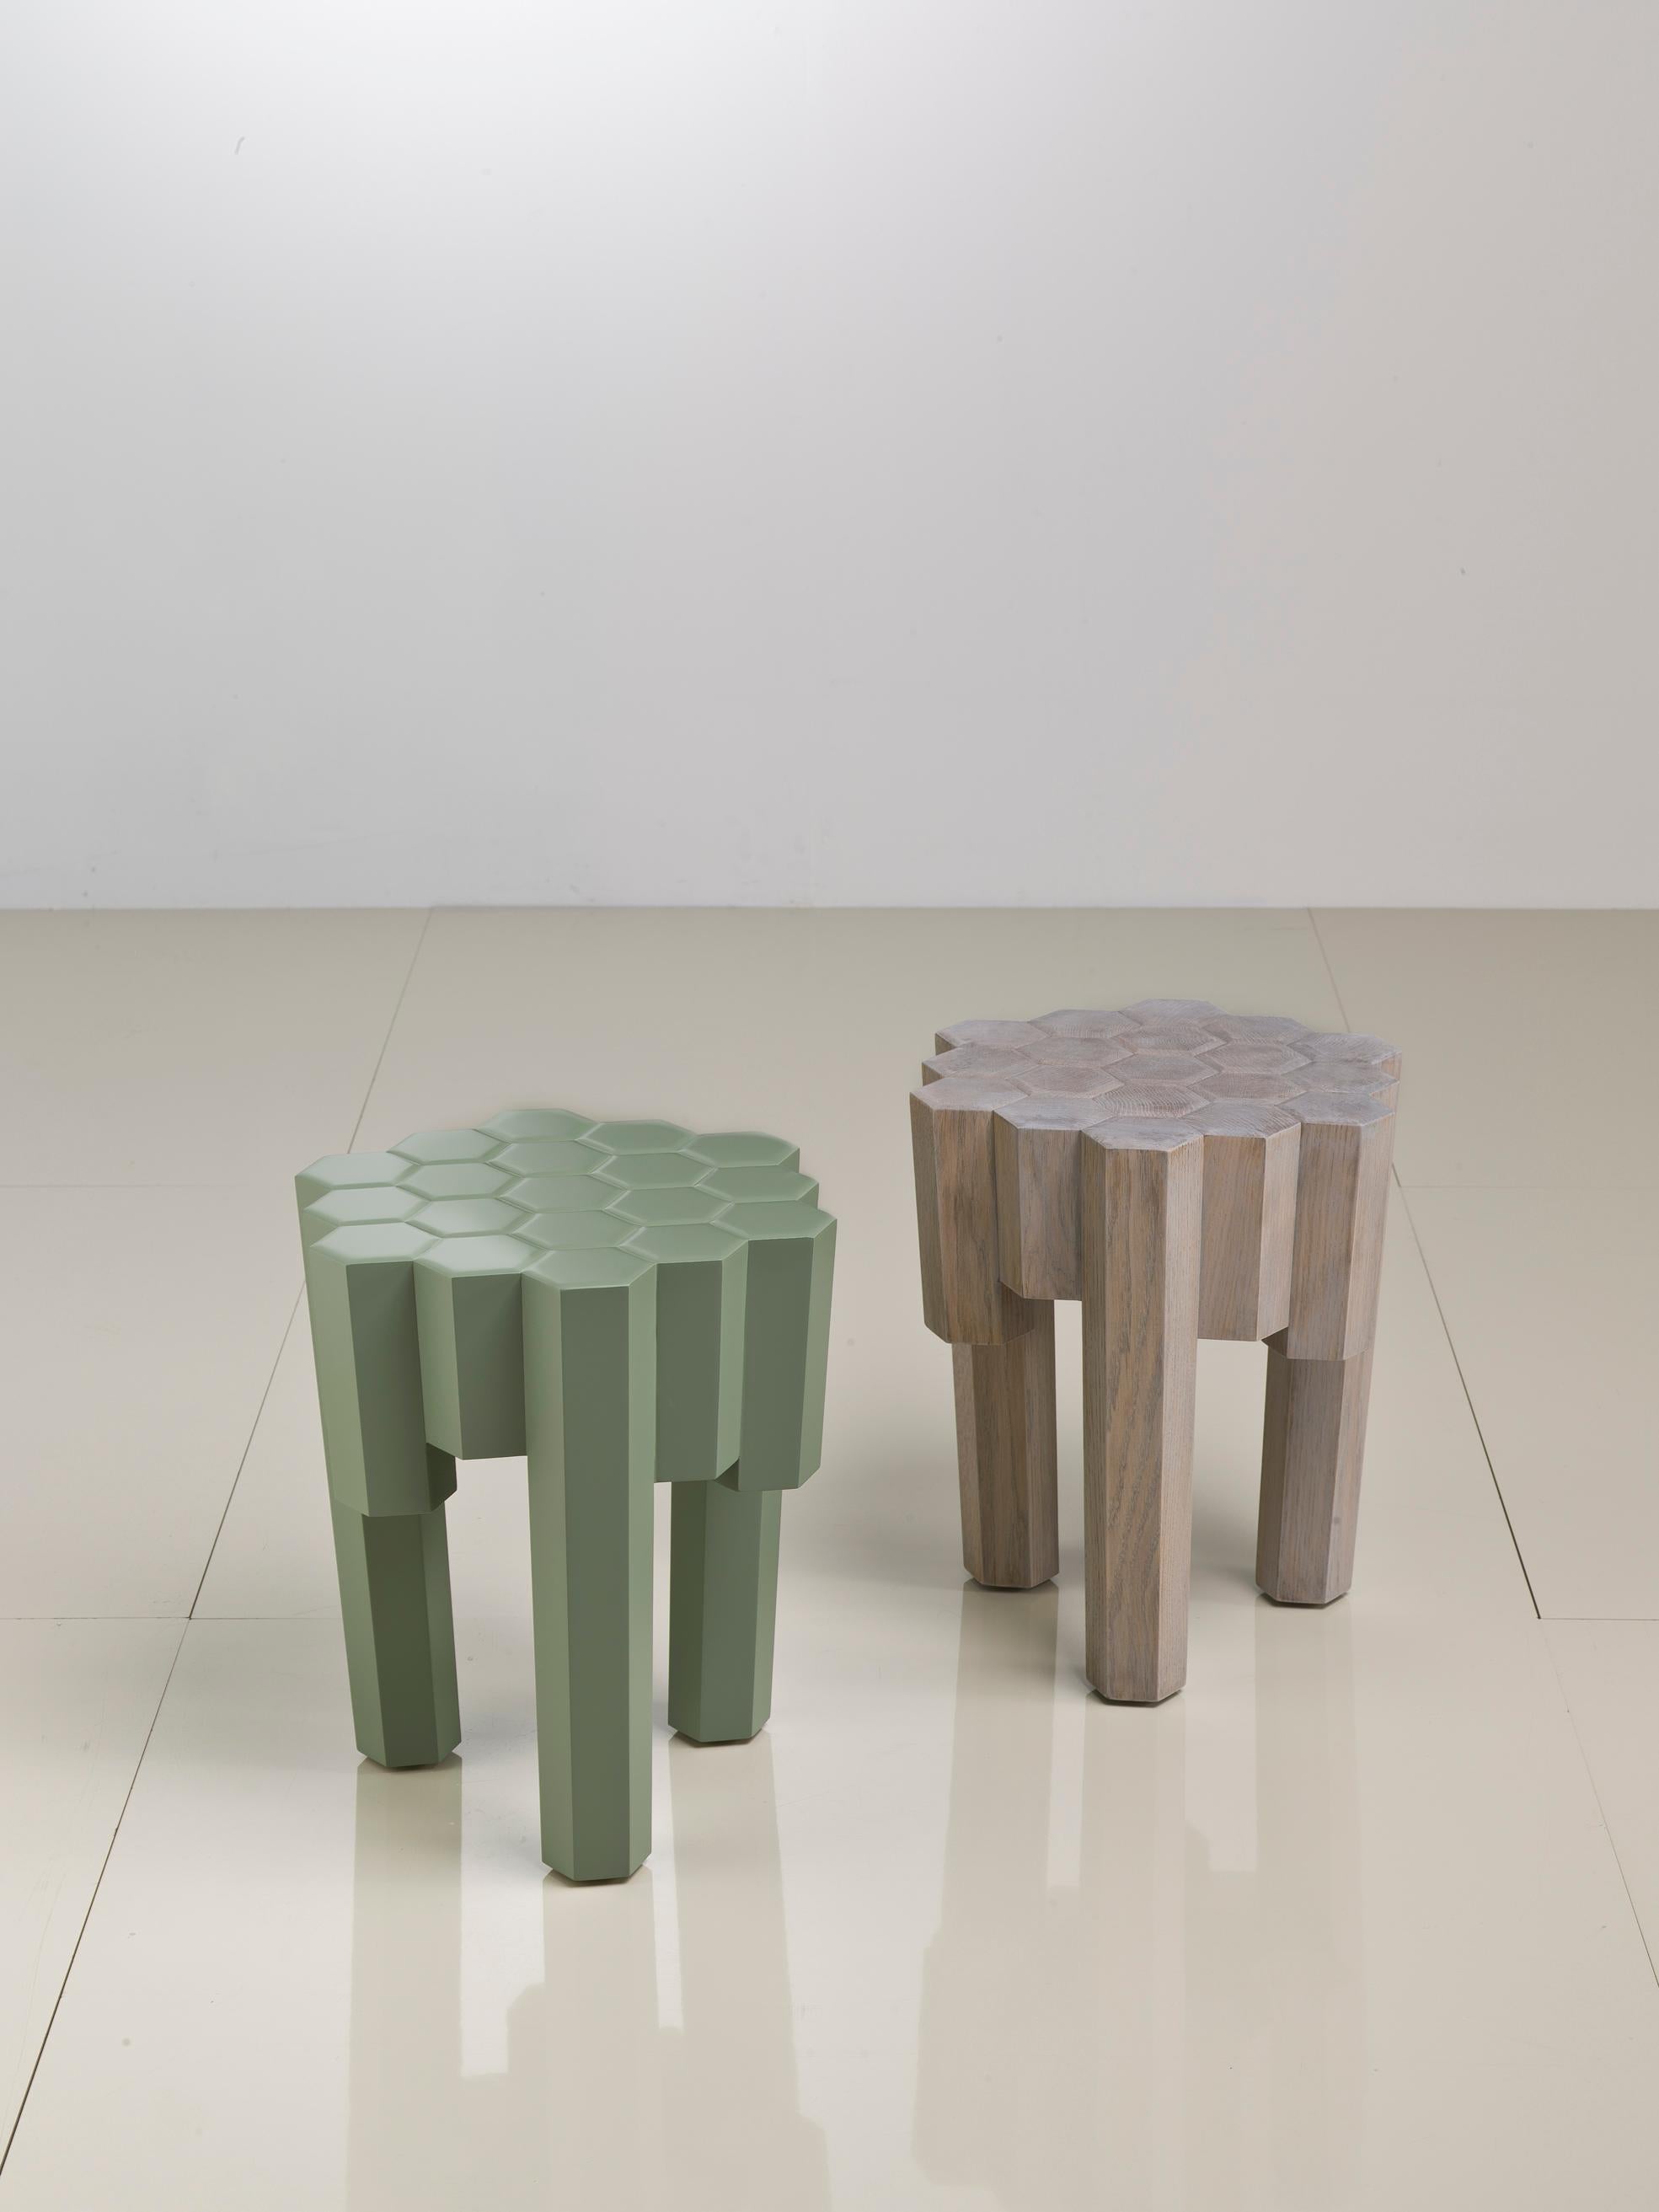 
Entrez dans le monde captivant de Lui 6, les petites tables conçues par Philippe Bestenheider qui s'inspirent de la beauté complexe de la nature, en particulier de l'attrait esthétique des nids d'abeilles. Dans une danse fascinante de formes